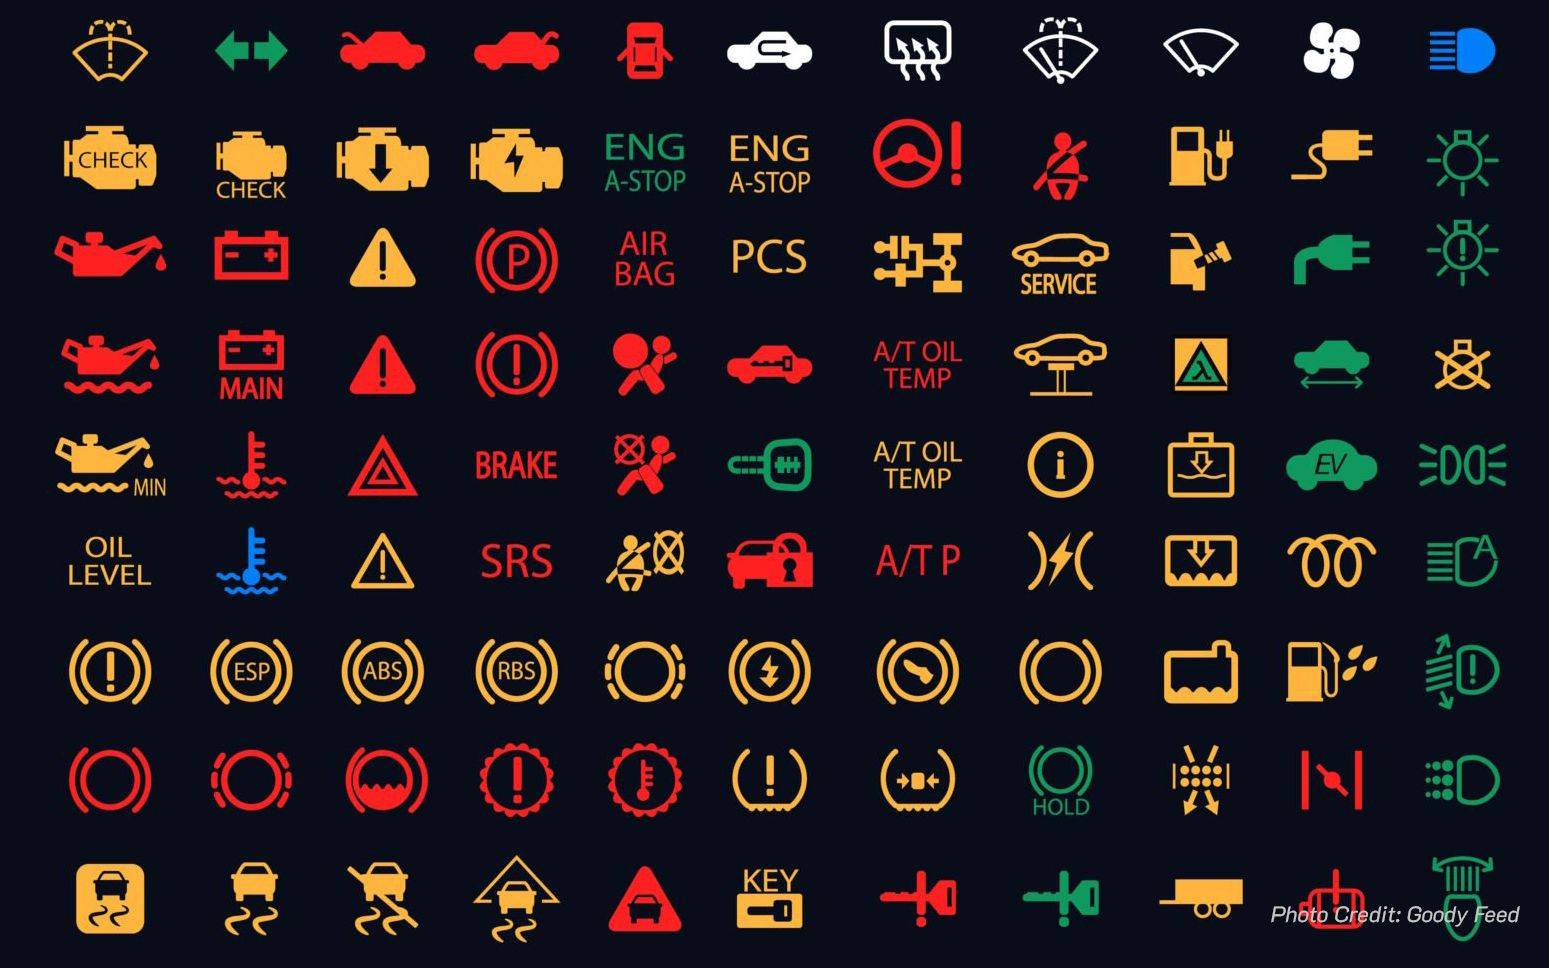 Обозначение значков на приборной панели: 10 групп символов